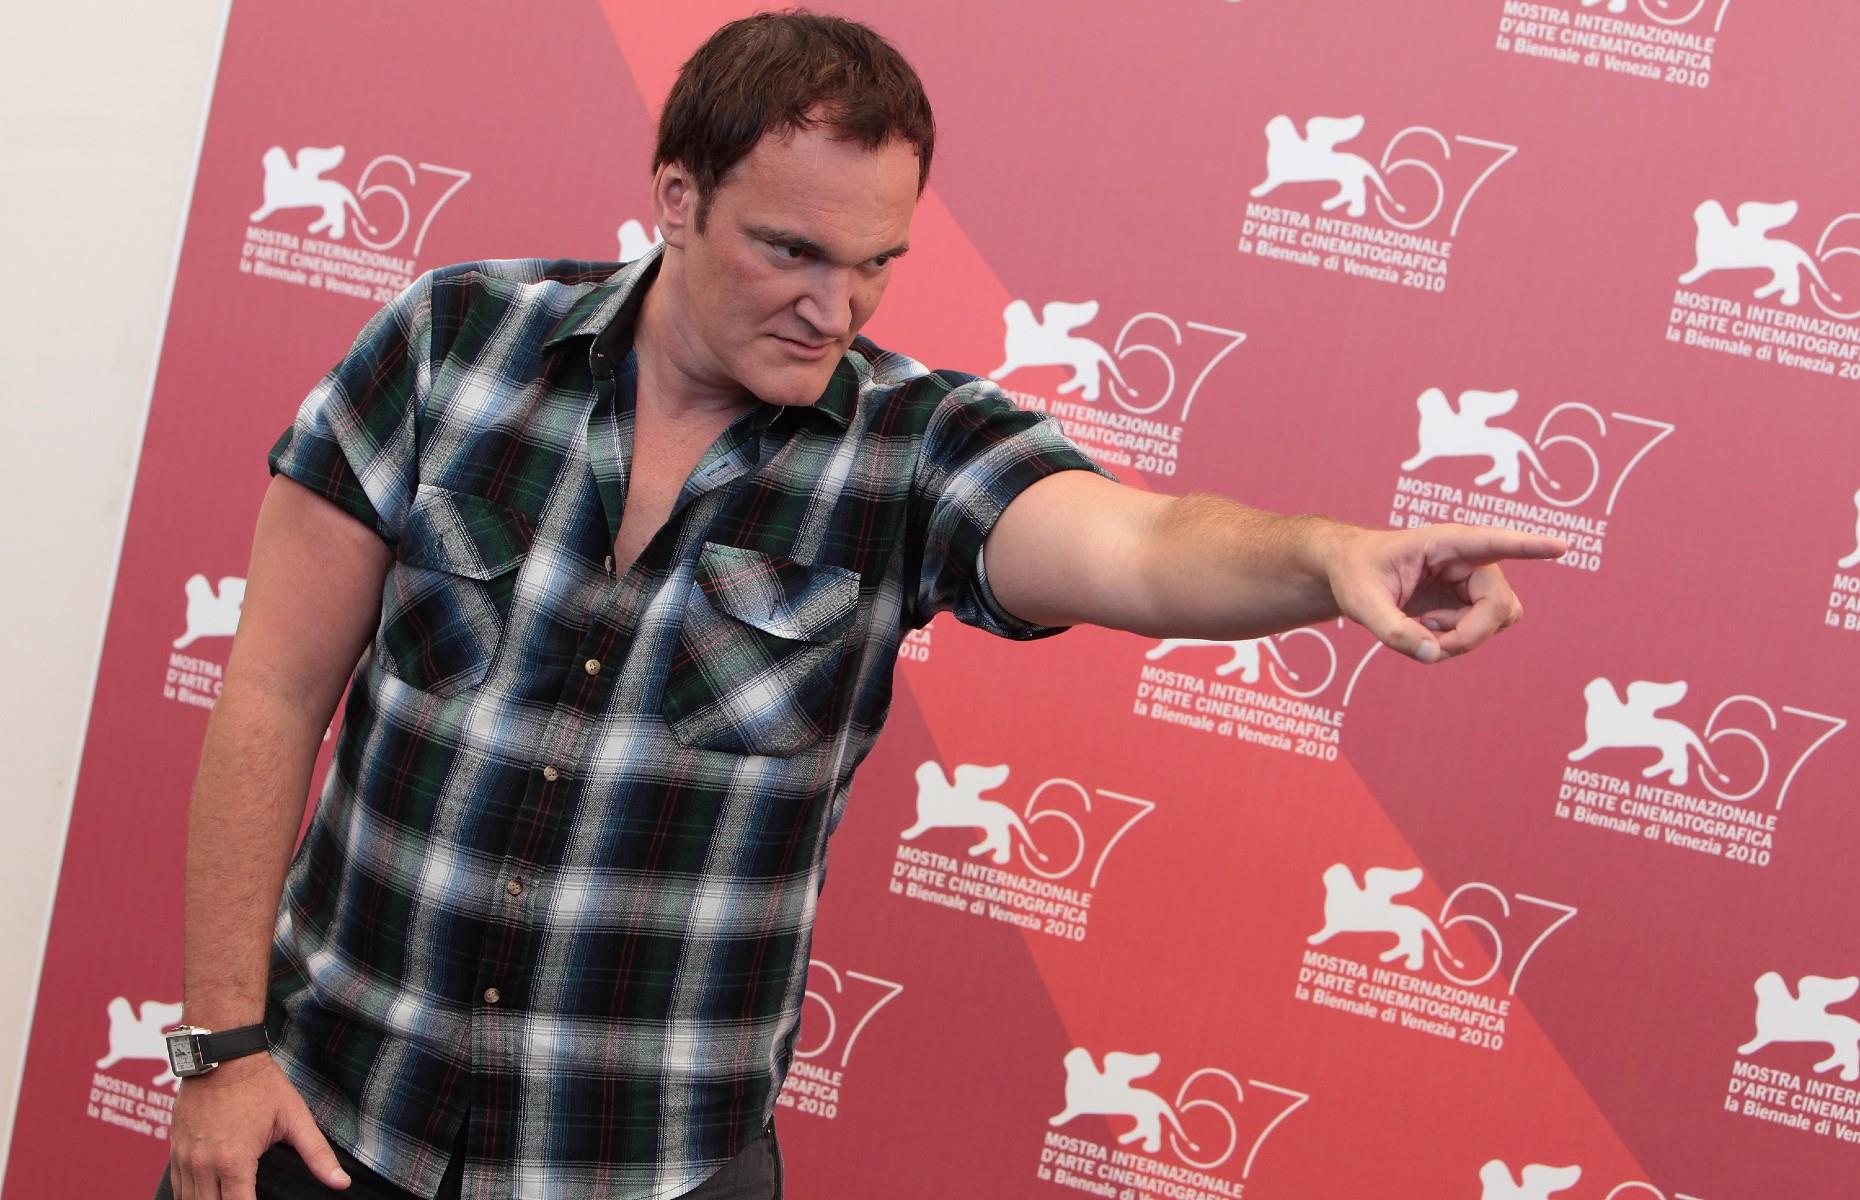 Quentin Tarantino's board games